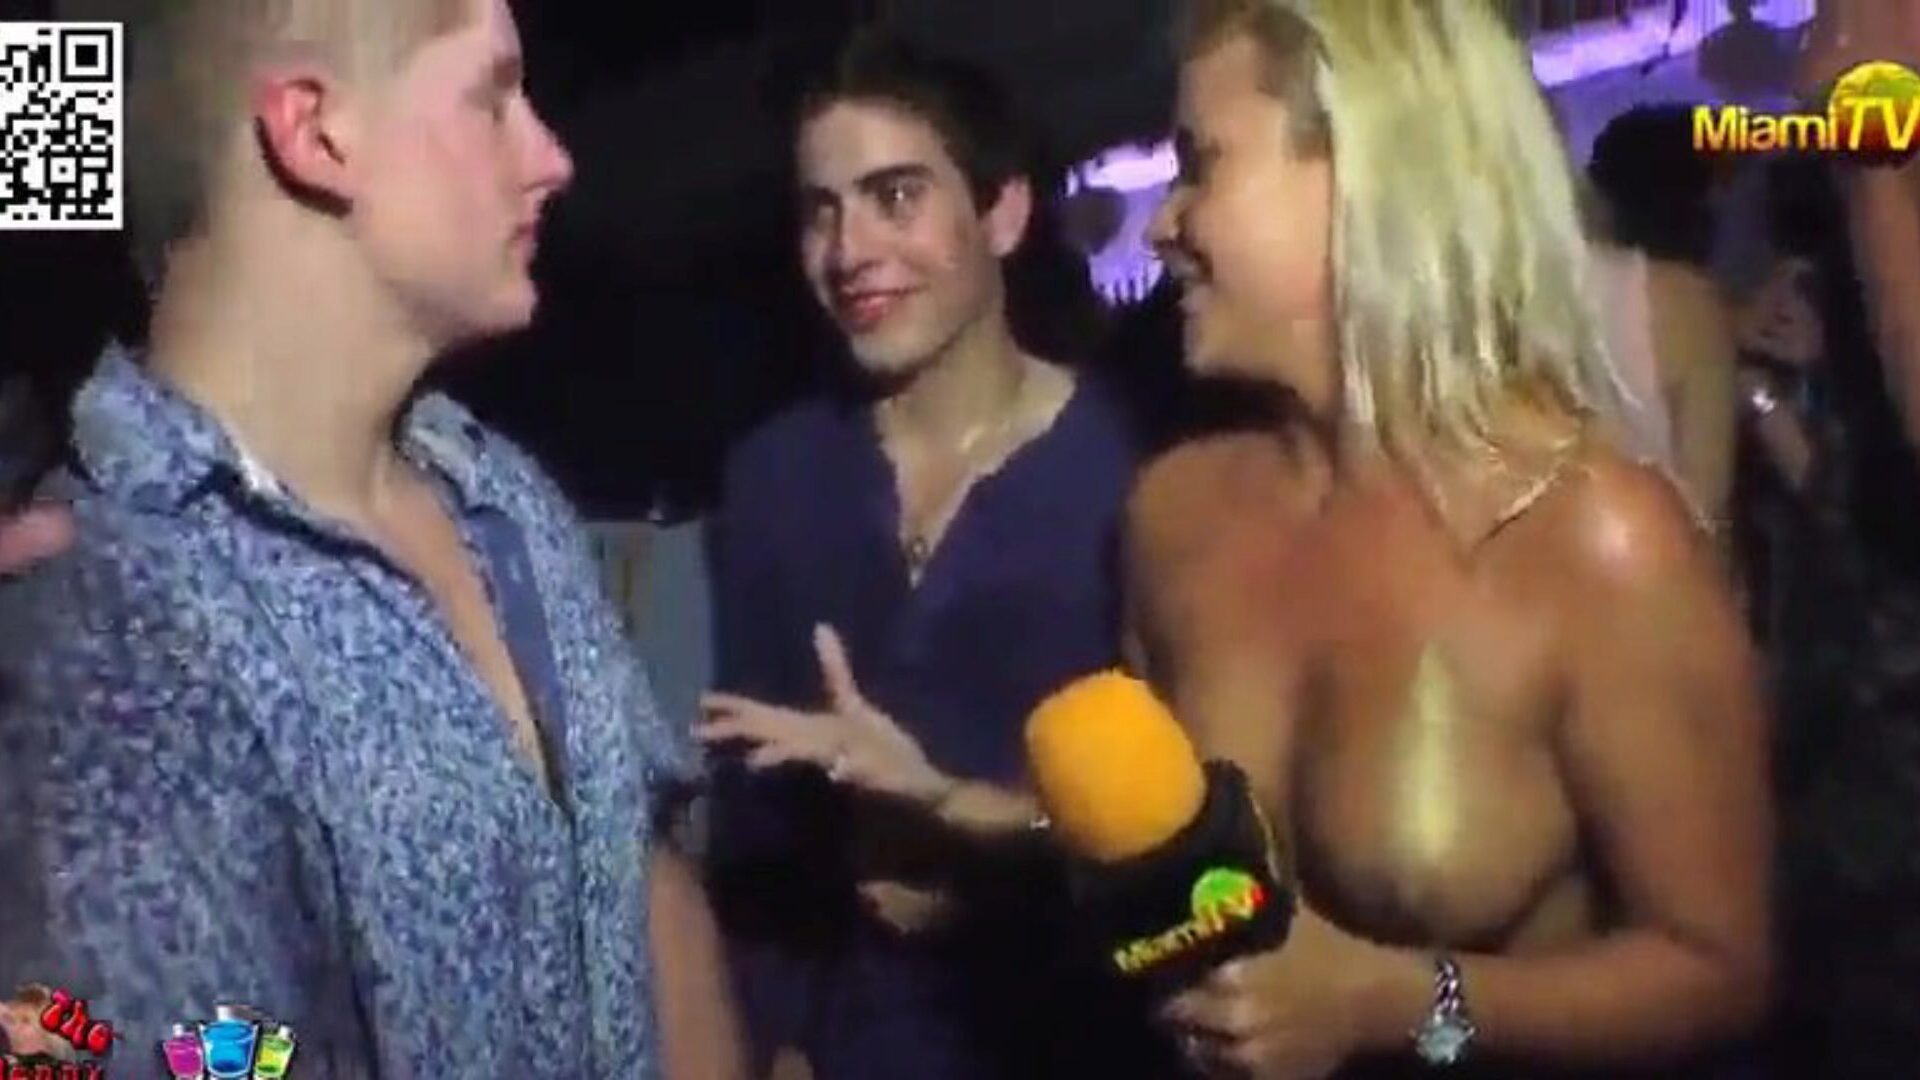 телеведущий принимает ставки, чтобы его проверили 3 откровенно одетых ведущего просит людей в ночном клубе почувствовать ее и поцеловать